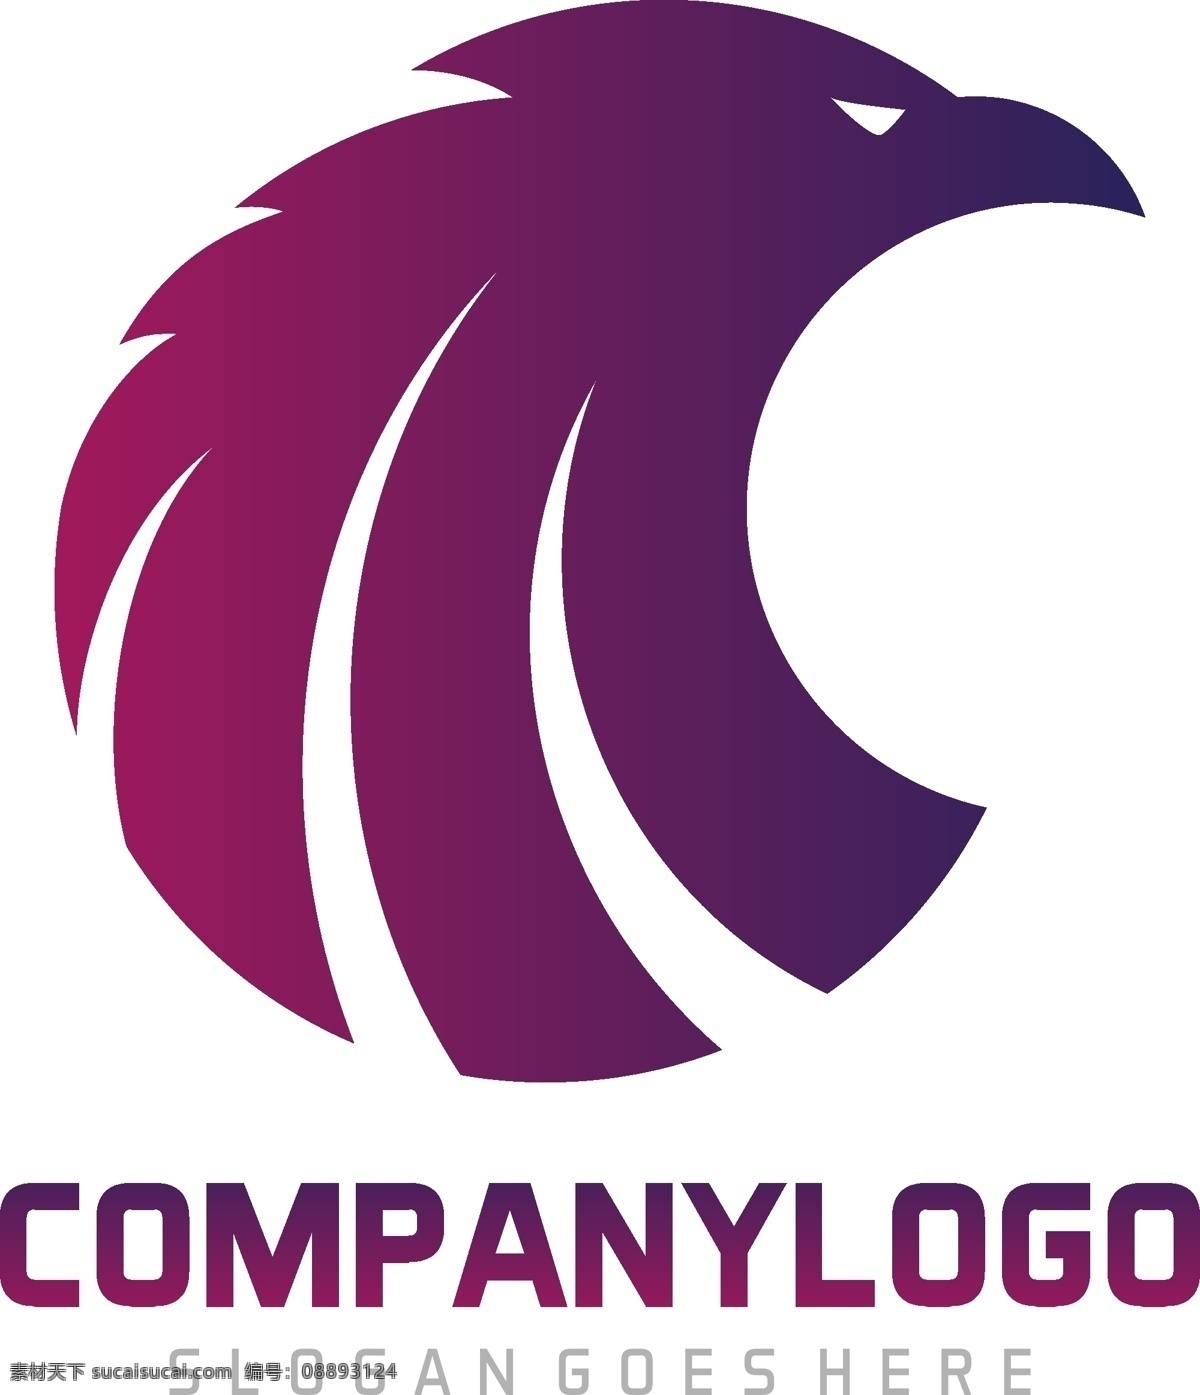 紫色 渐变 抽象 老鹰 头像 logo 模板 扁平化 logo模板 鹰 几何形状